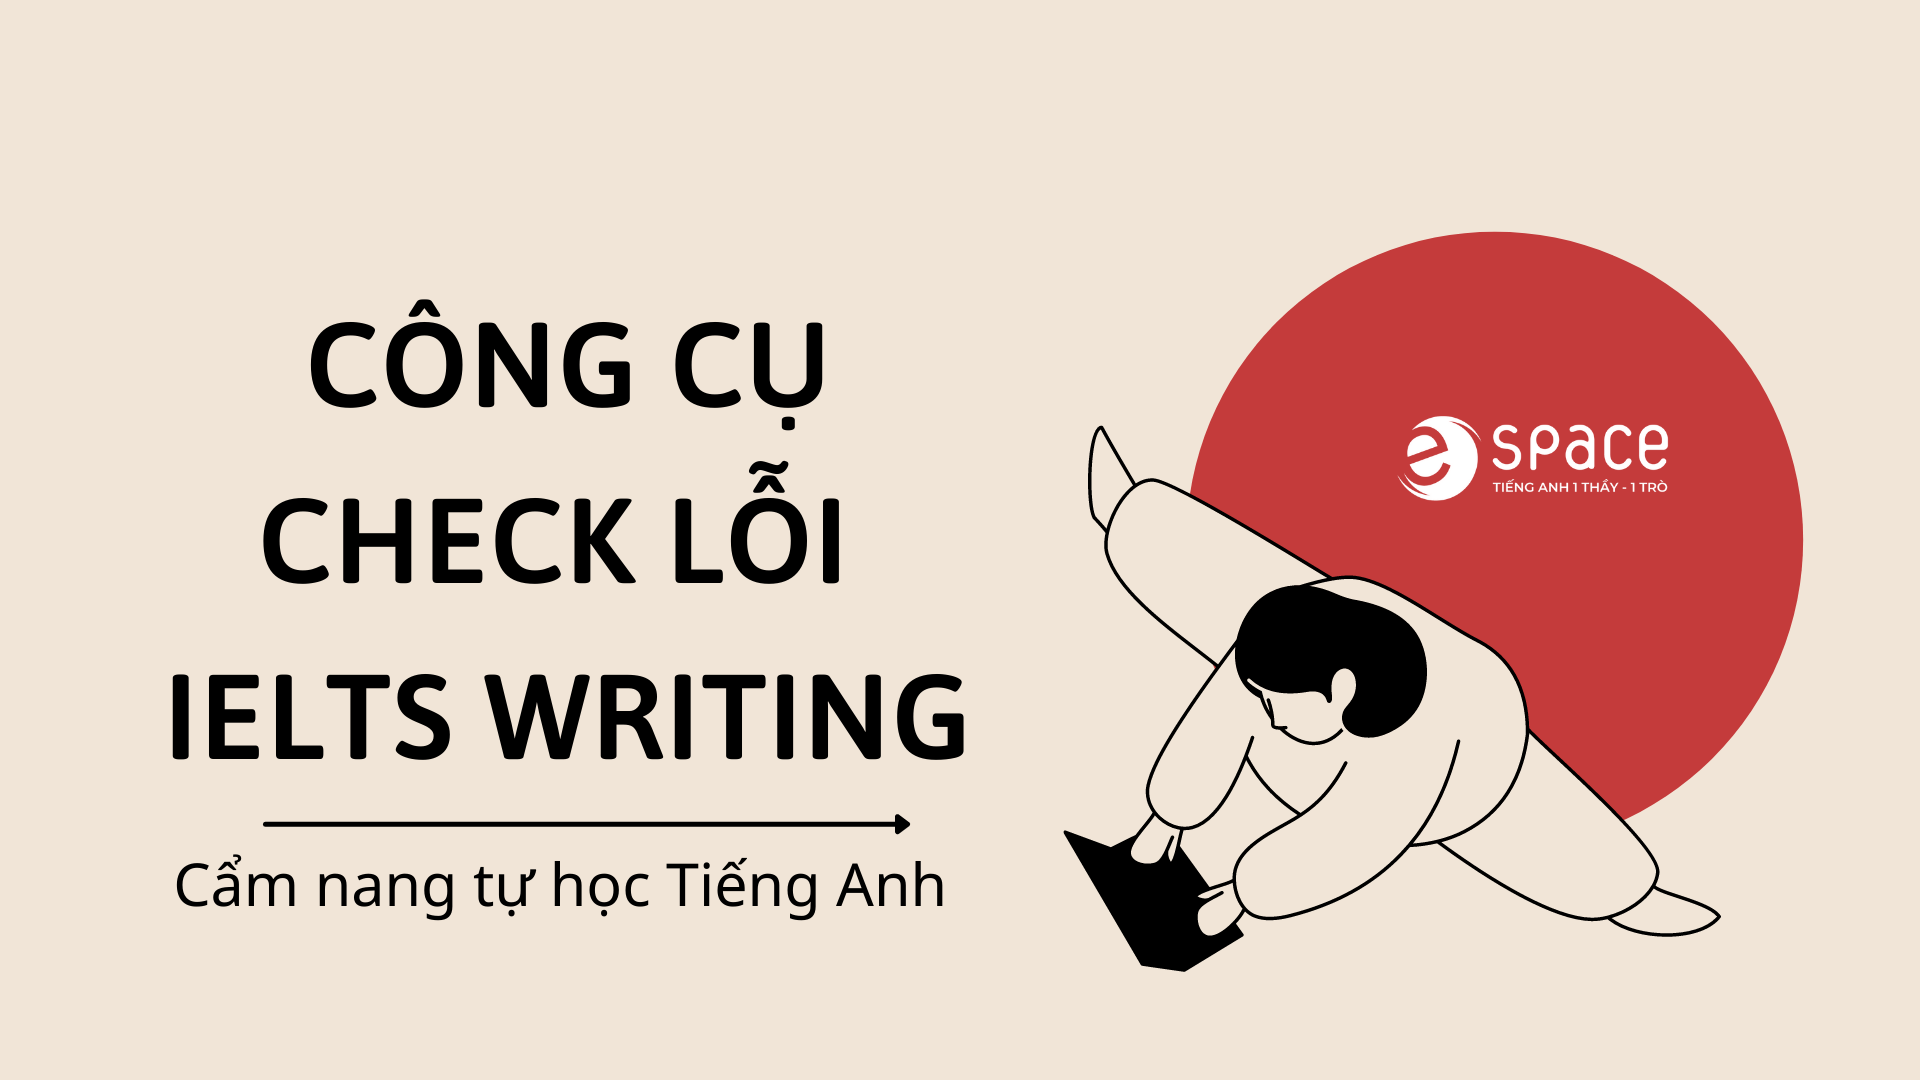 CÁC CÔNG CỤ CHECK LỖI NGỮ PHÁP TRONG IELTS WRITING